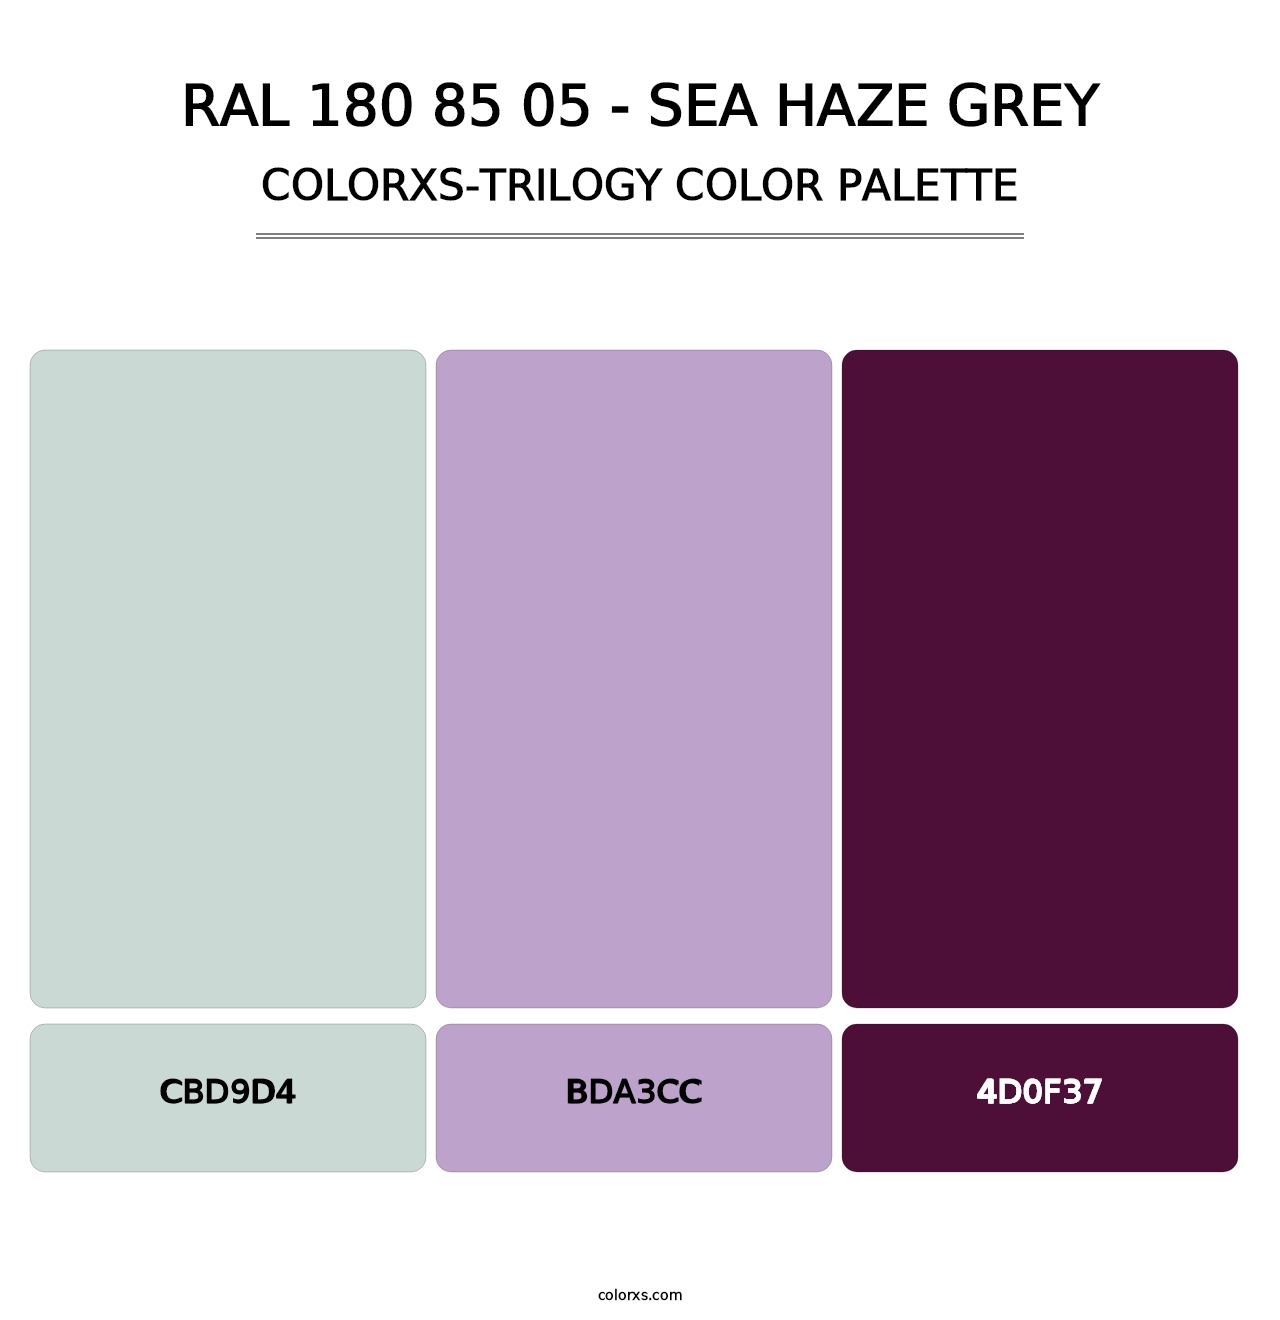 RAL 180 85 05 - Sea Haze Grey - Colorxs Trilogy Palette